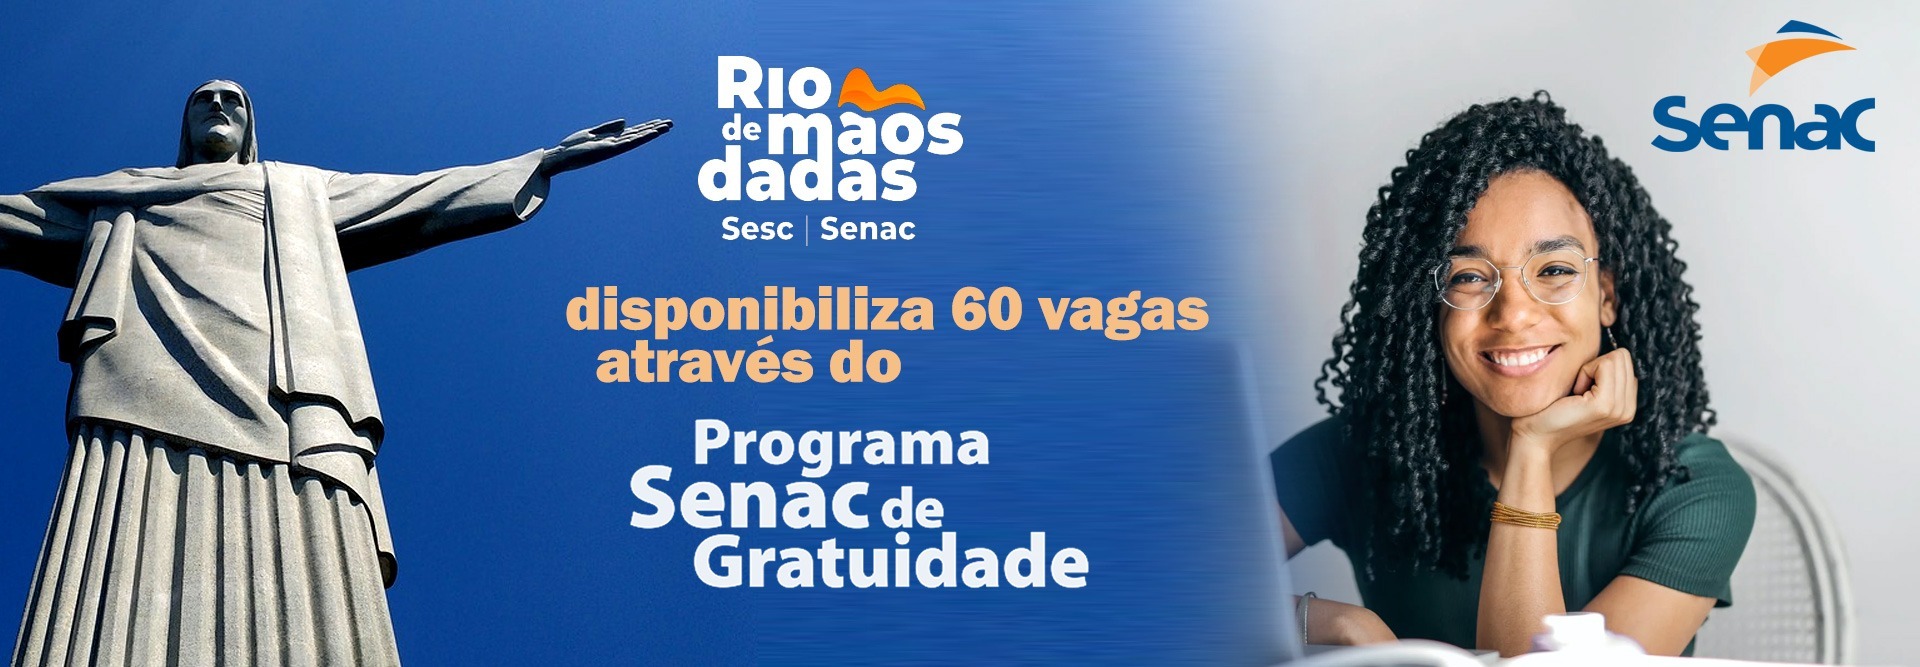 Rio de Mãos Dadas disponibiliza 60 vagas através do Programa Senac de Gratuidade